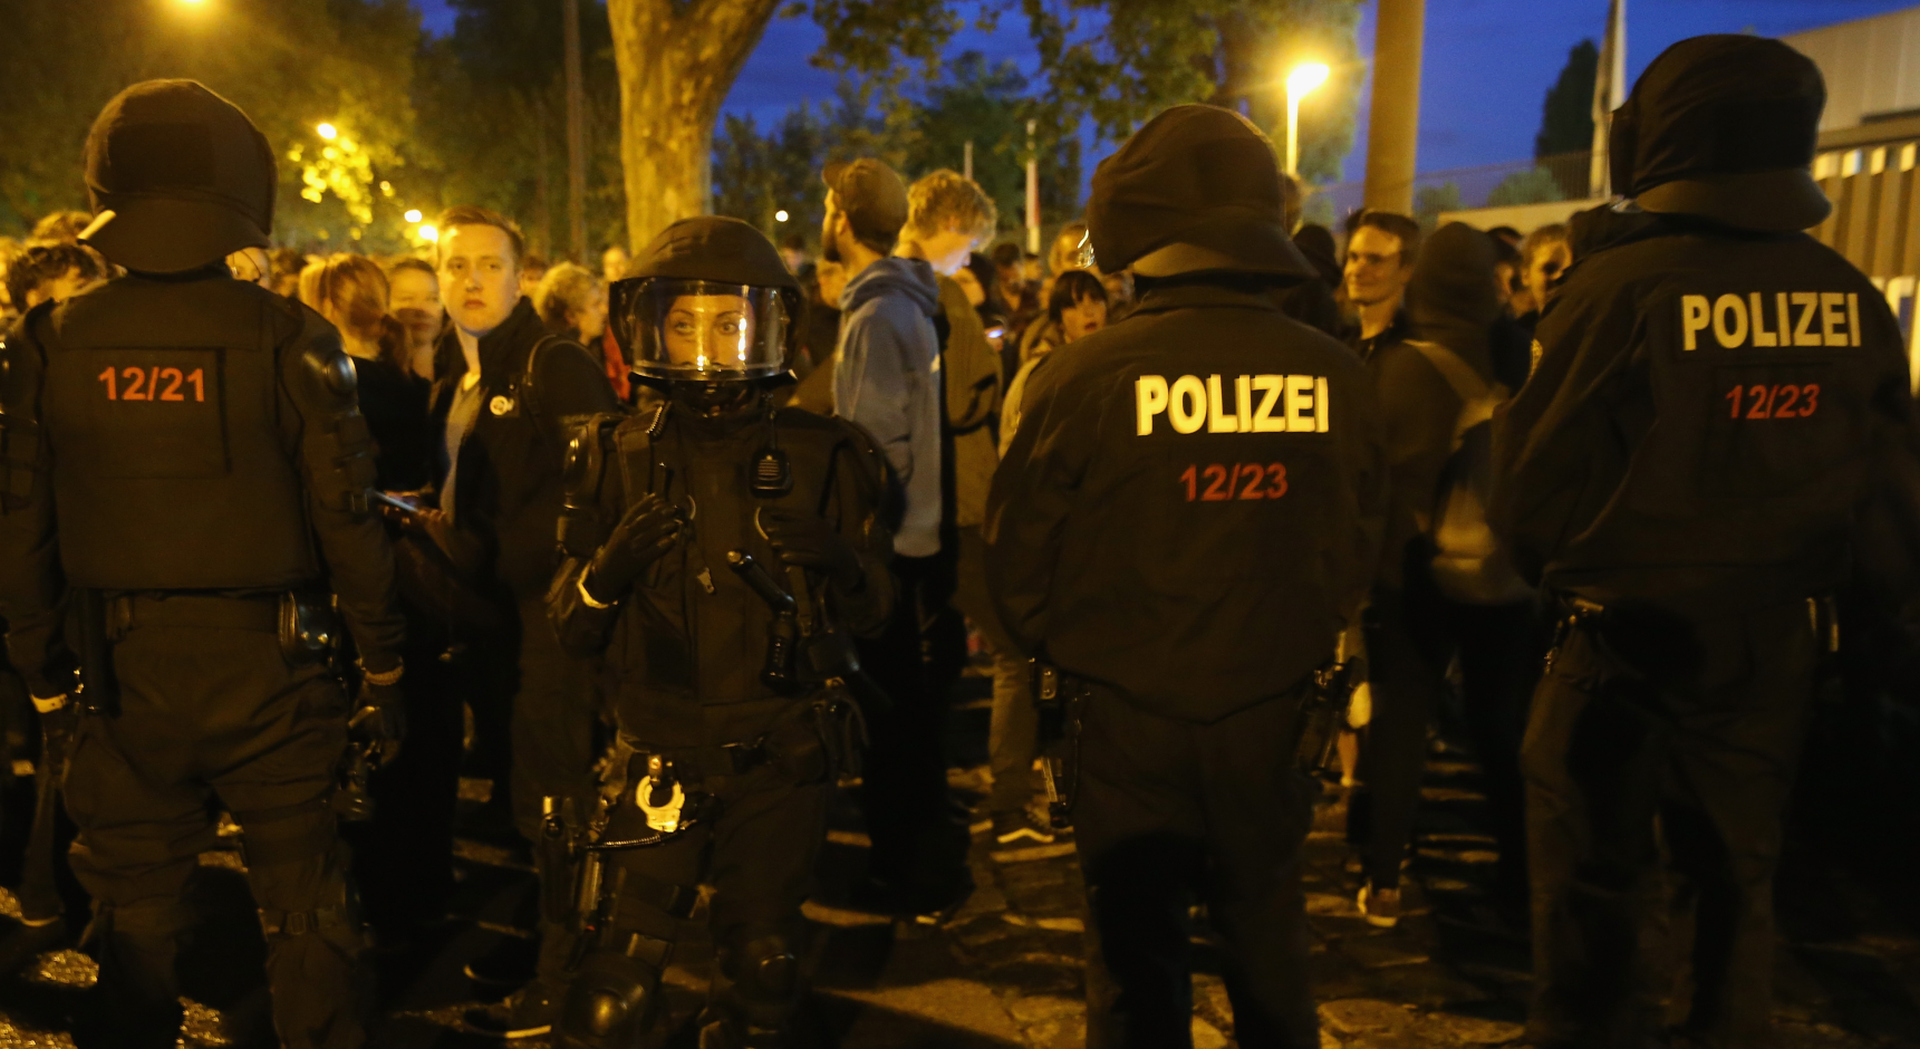 NJEMAČKI ANALITIČAR UPOZORAVA: Bit će još protuimigrantskog nasilja u Njemačkoj